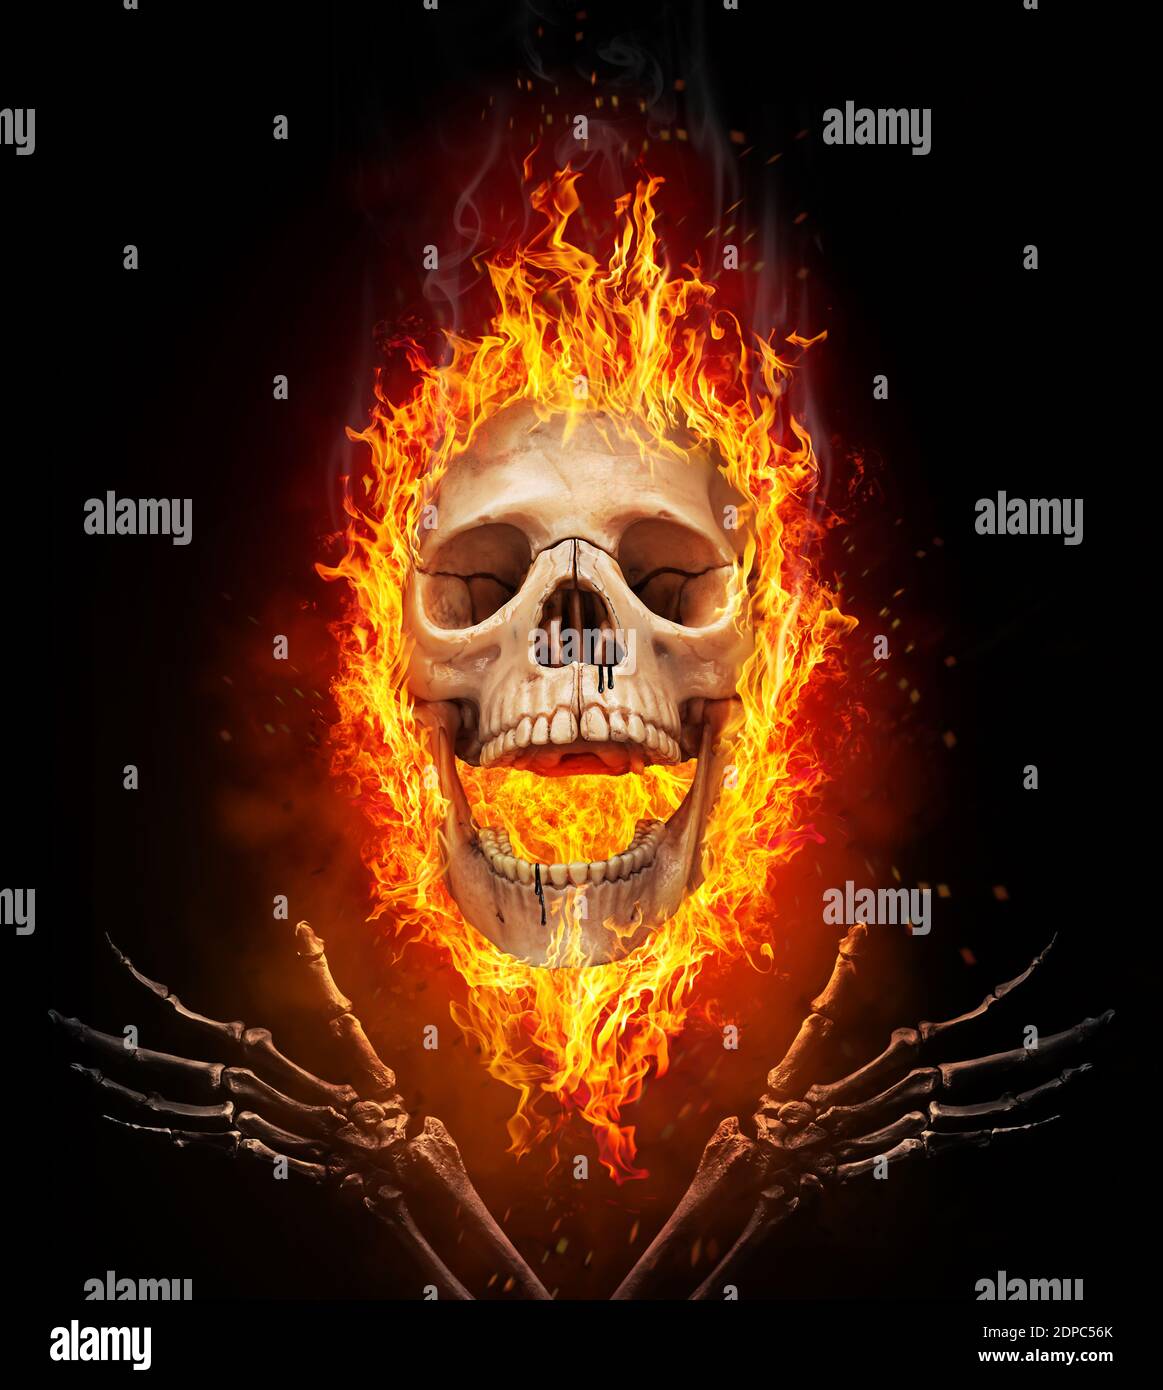 Cráneo quemado en el fuego. Concepto de Halloween Foto de stock